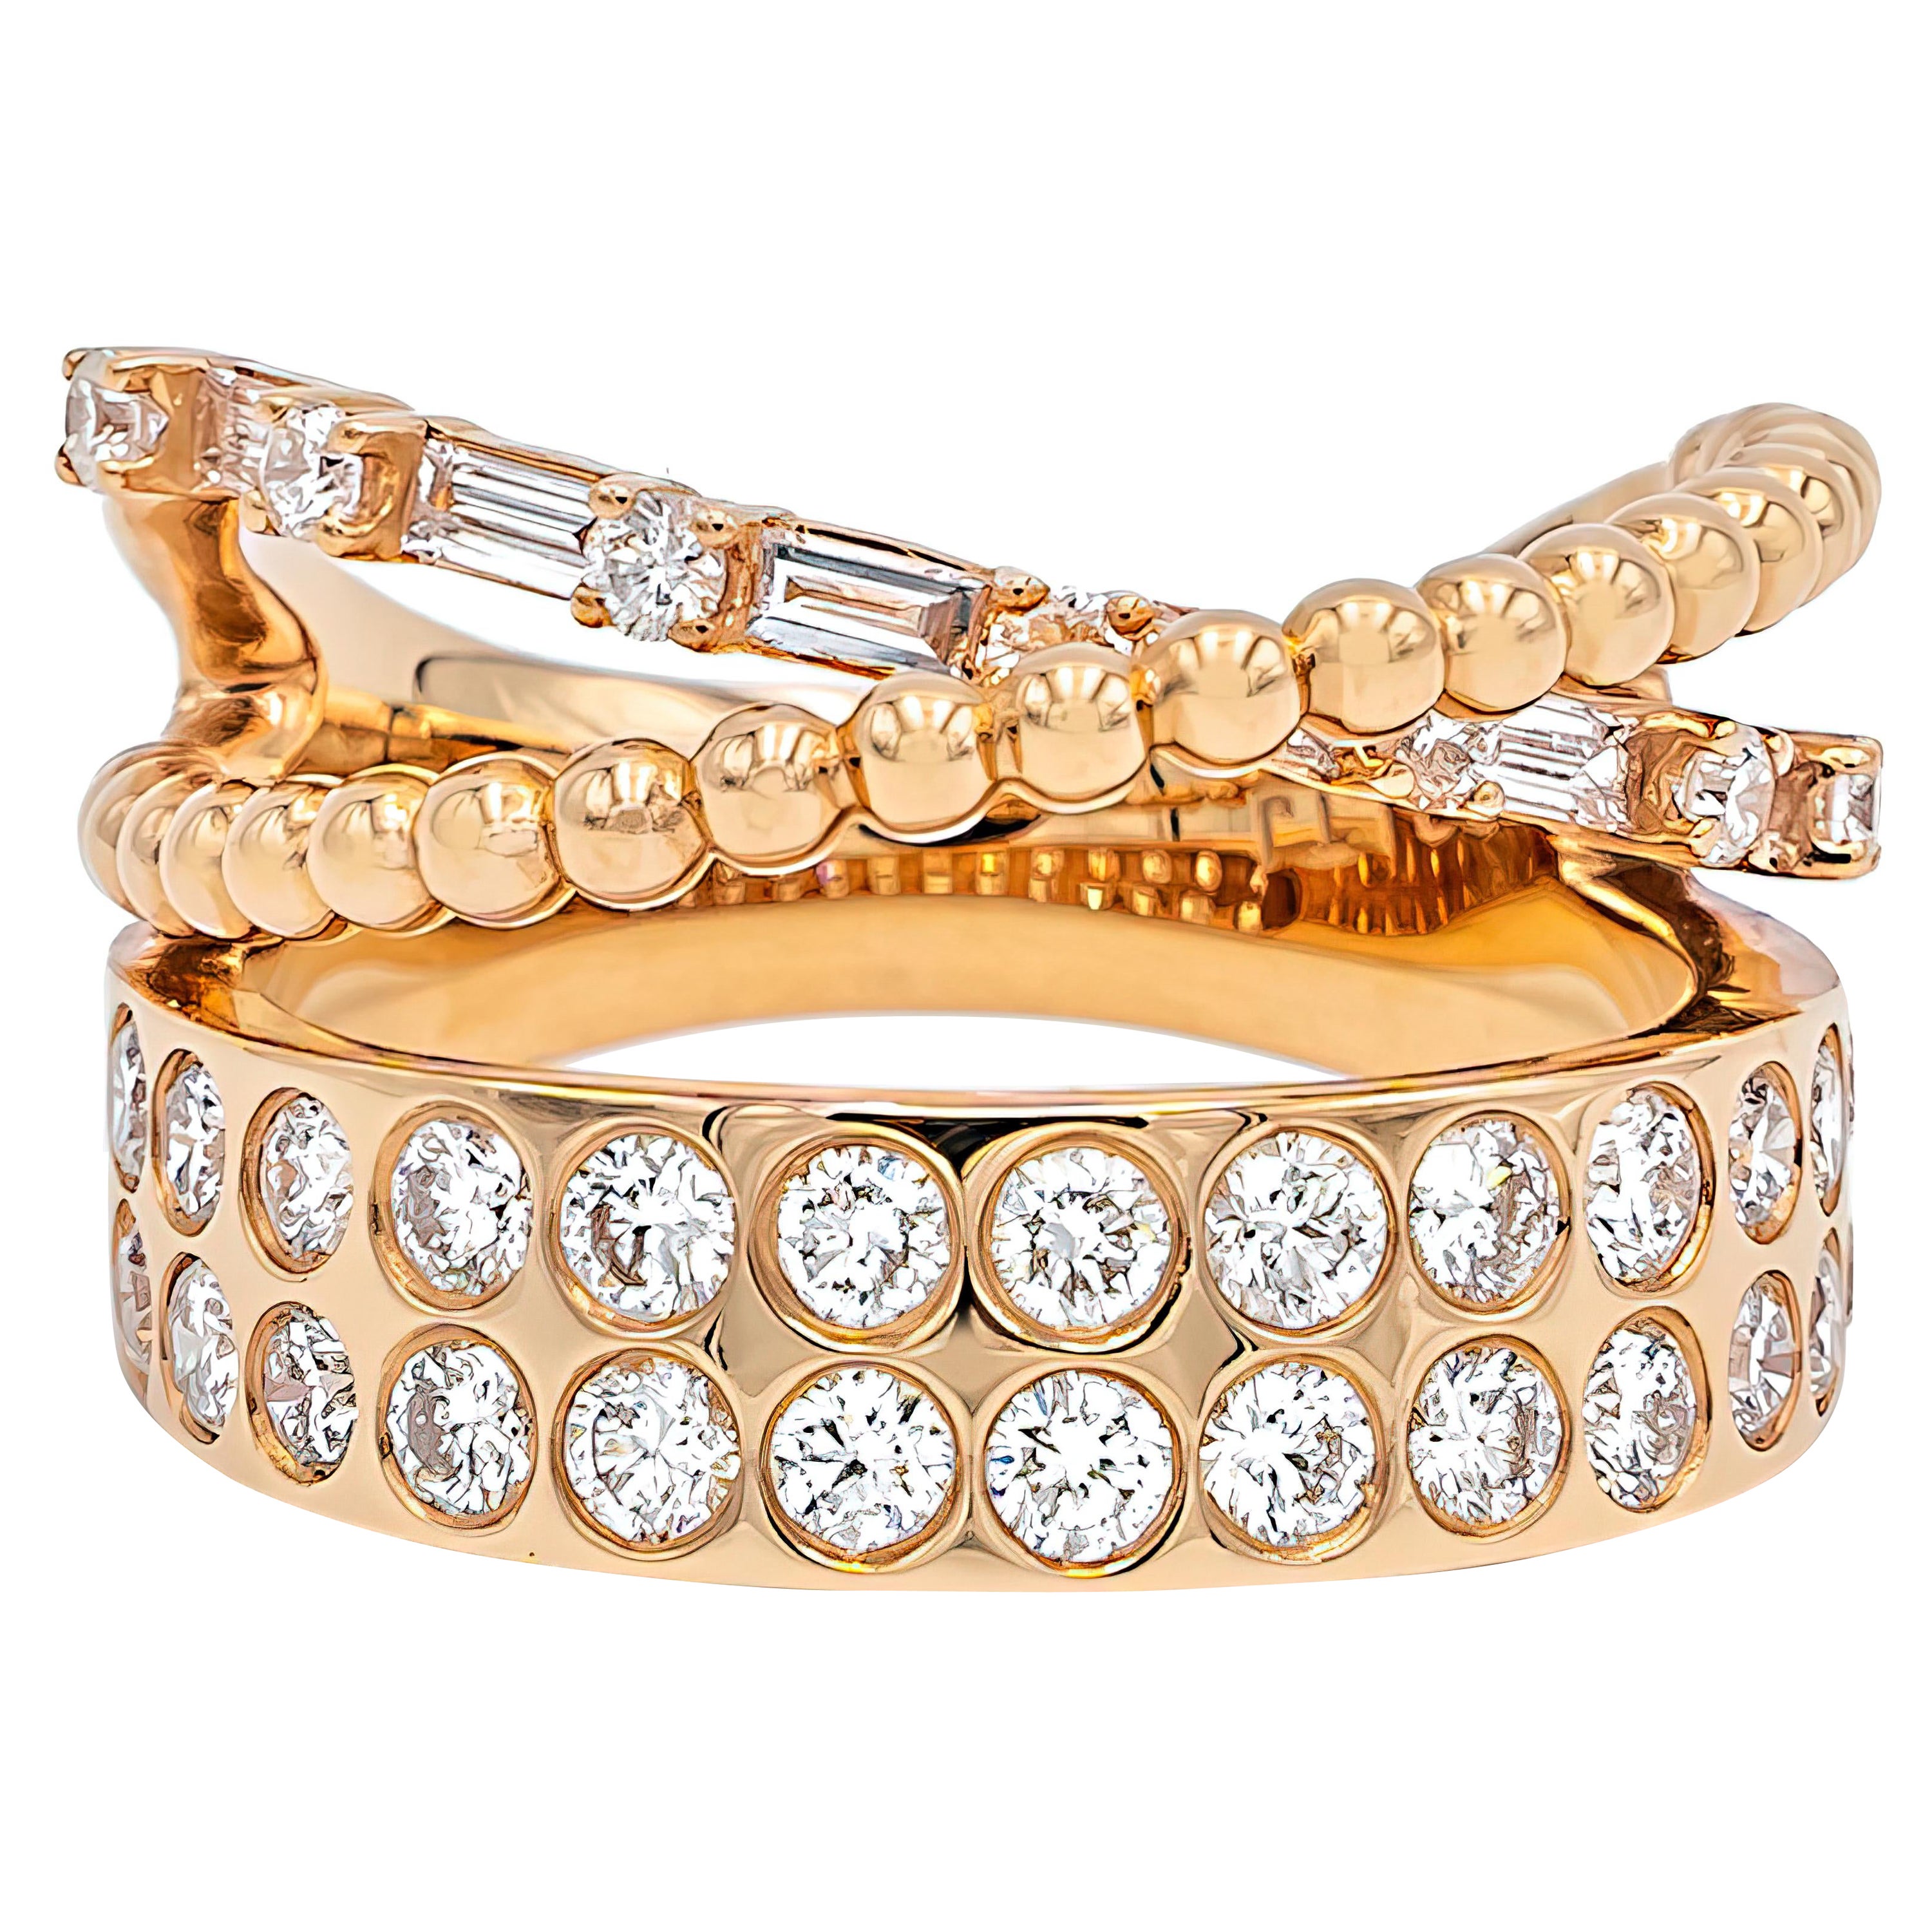 Bague en or 18 carats avec diamants ronds et effilés assortis en bandes croisées